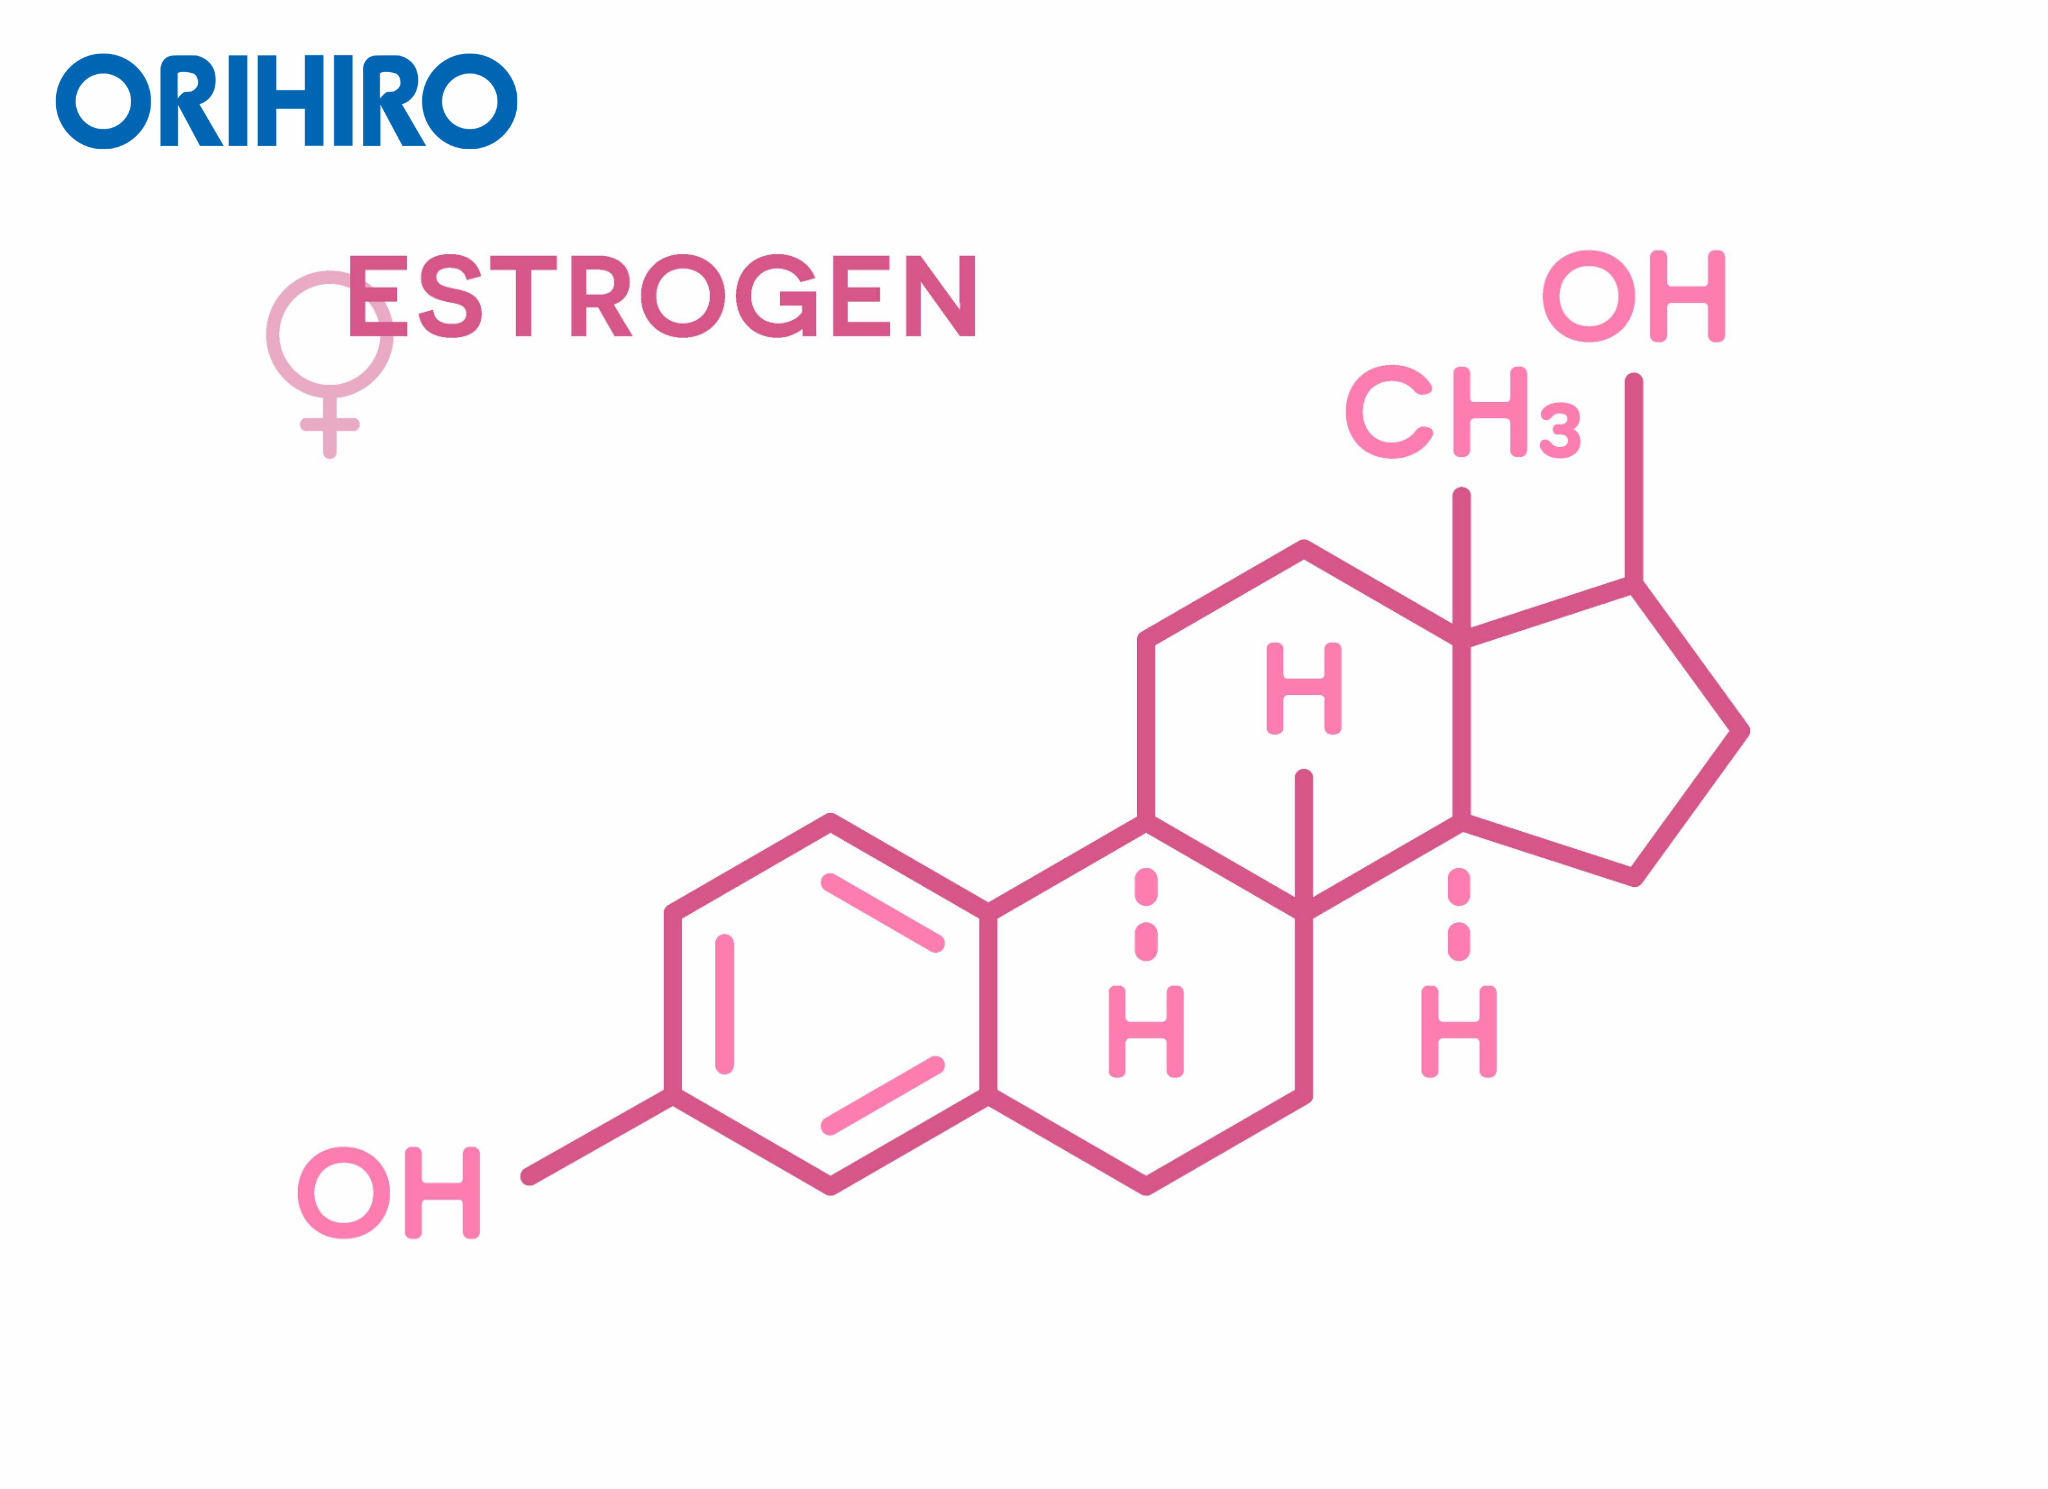 tăng vòng 1 phụ thuộc vào nồng độ Estrogen